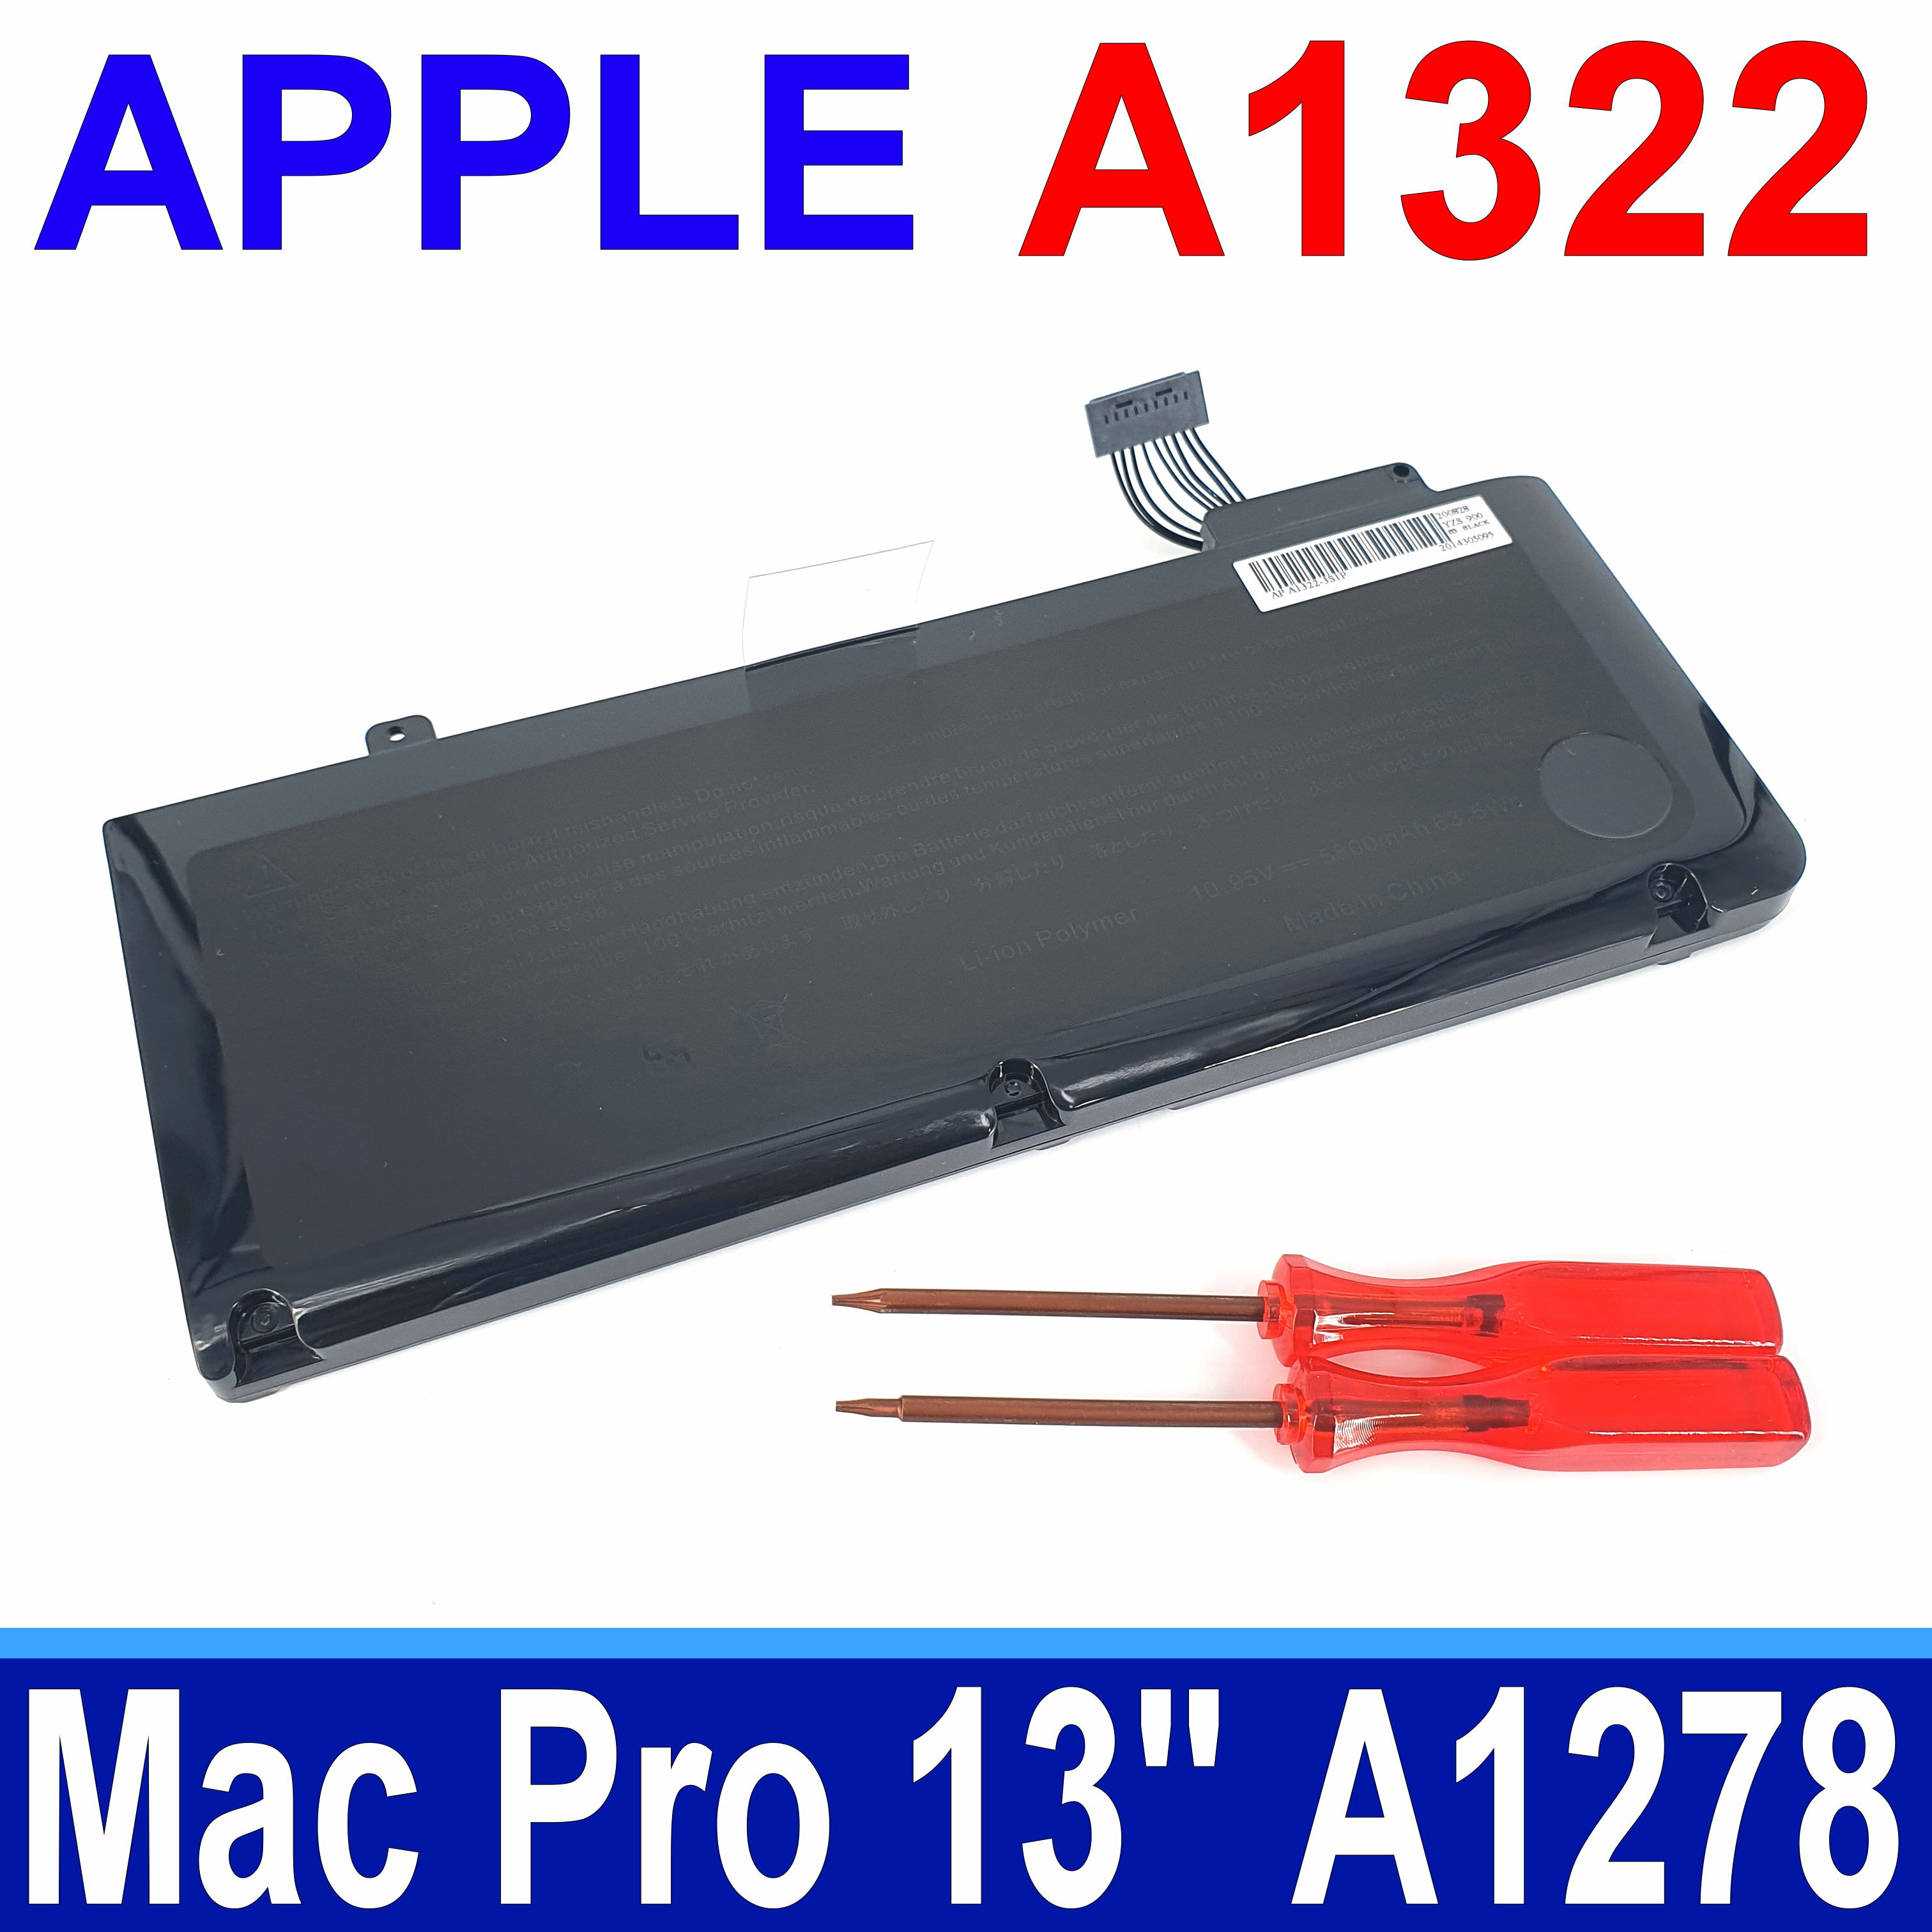 APPLE 蘋果 A1322 原廠規格 電池 MacBook Pro 13 A1278 2009~2012 AP0141 MB990 MB990LL/A MB991 MB991LL/A MC374 MC374LL/A，MC375 MC375LL/A MC700 MC724 MD313 MD314 MD101 MD102